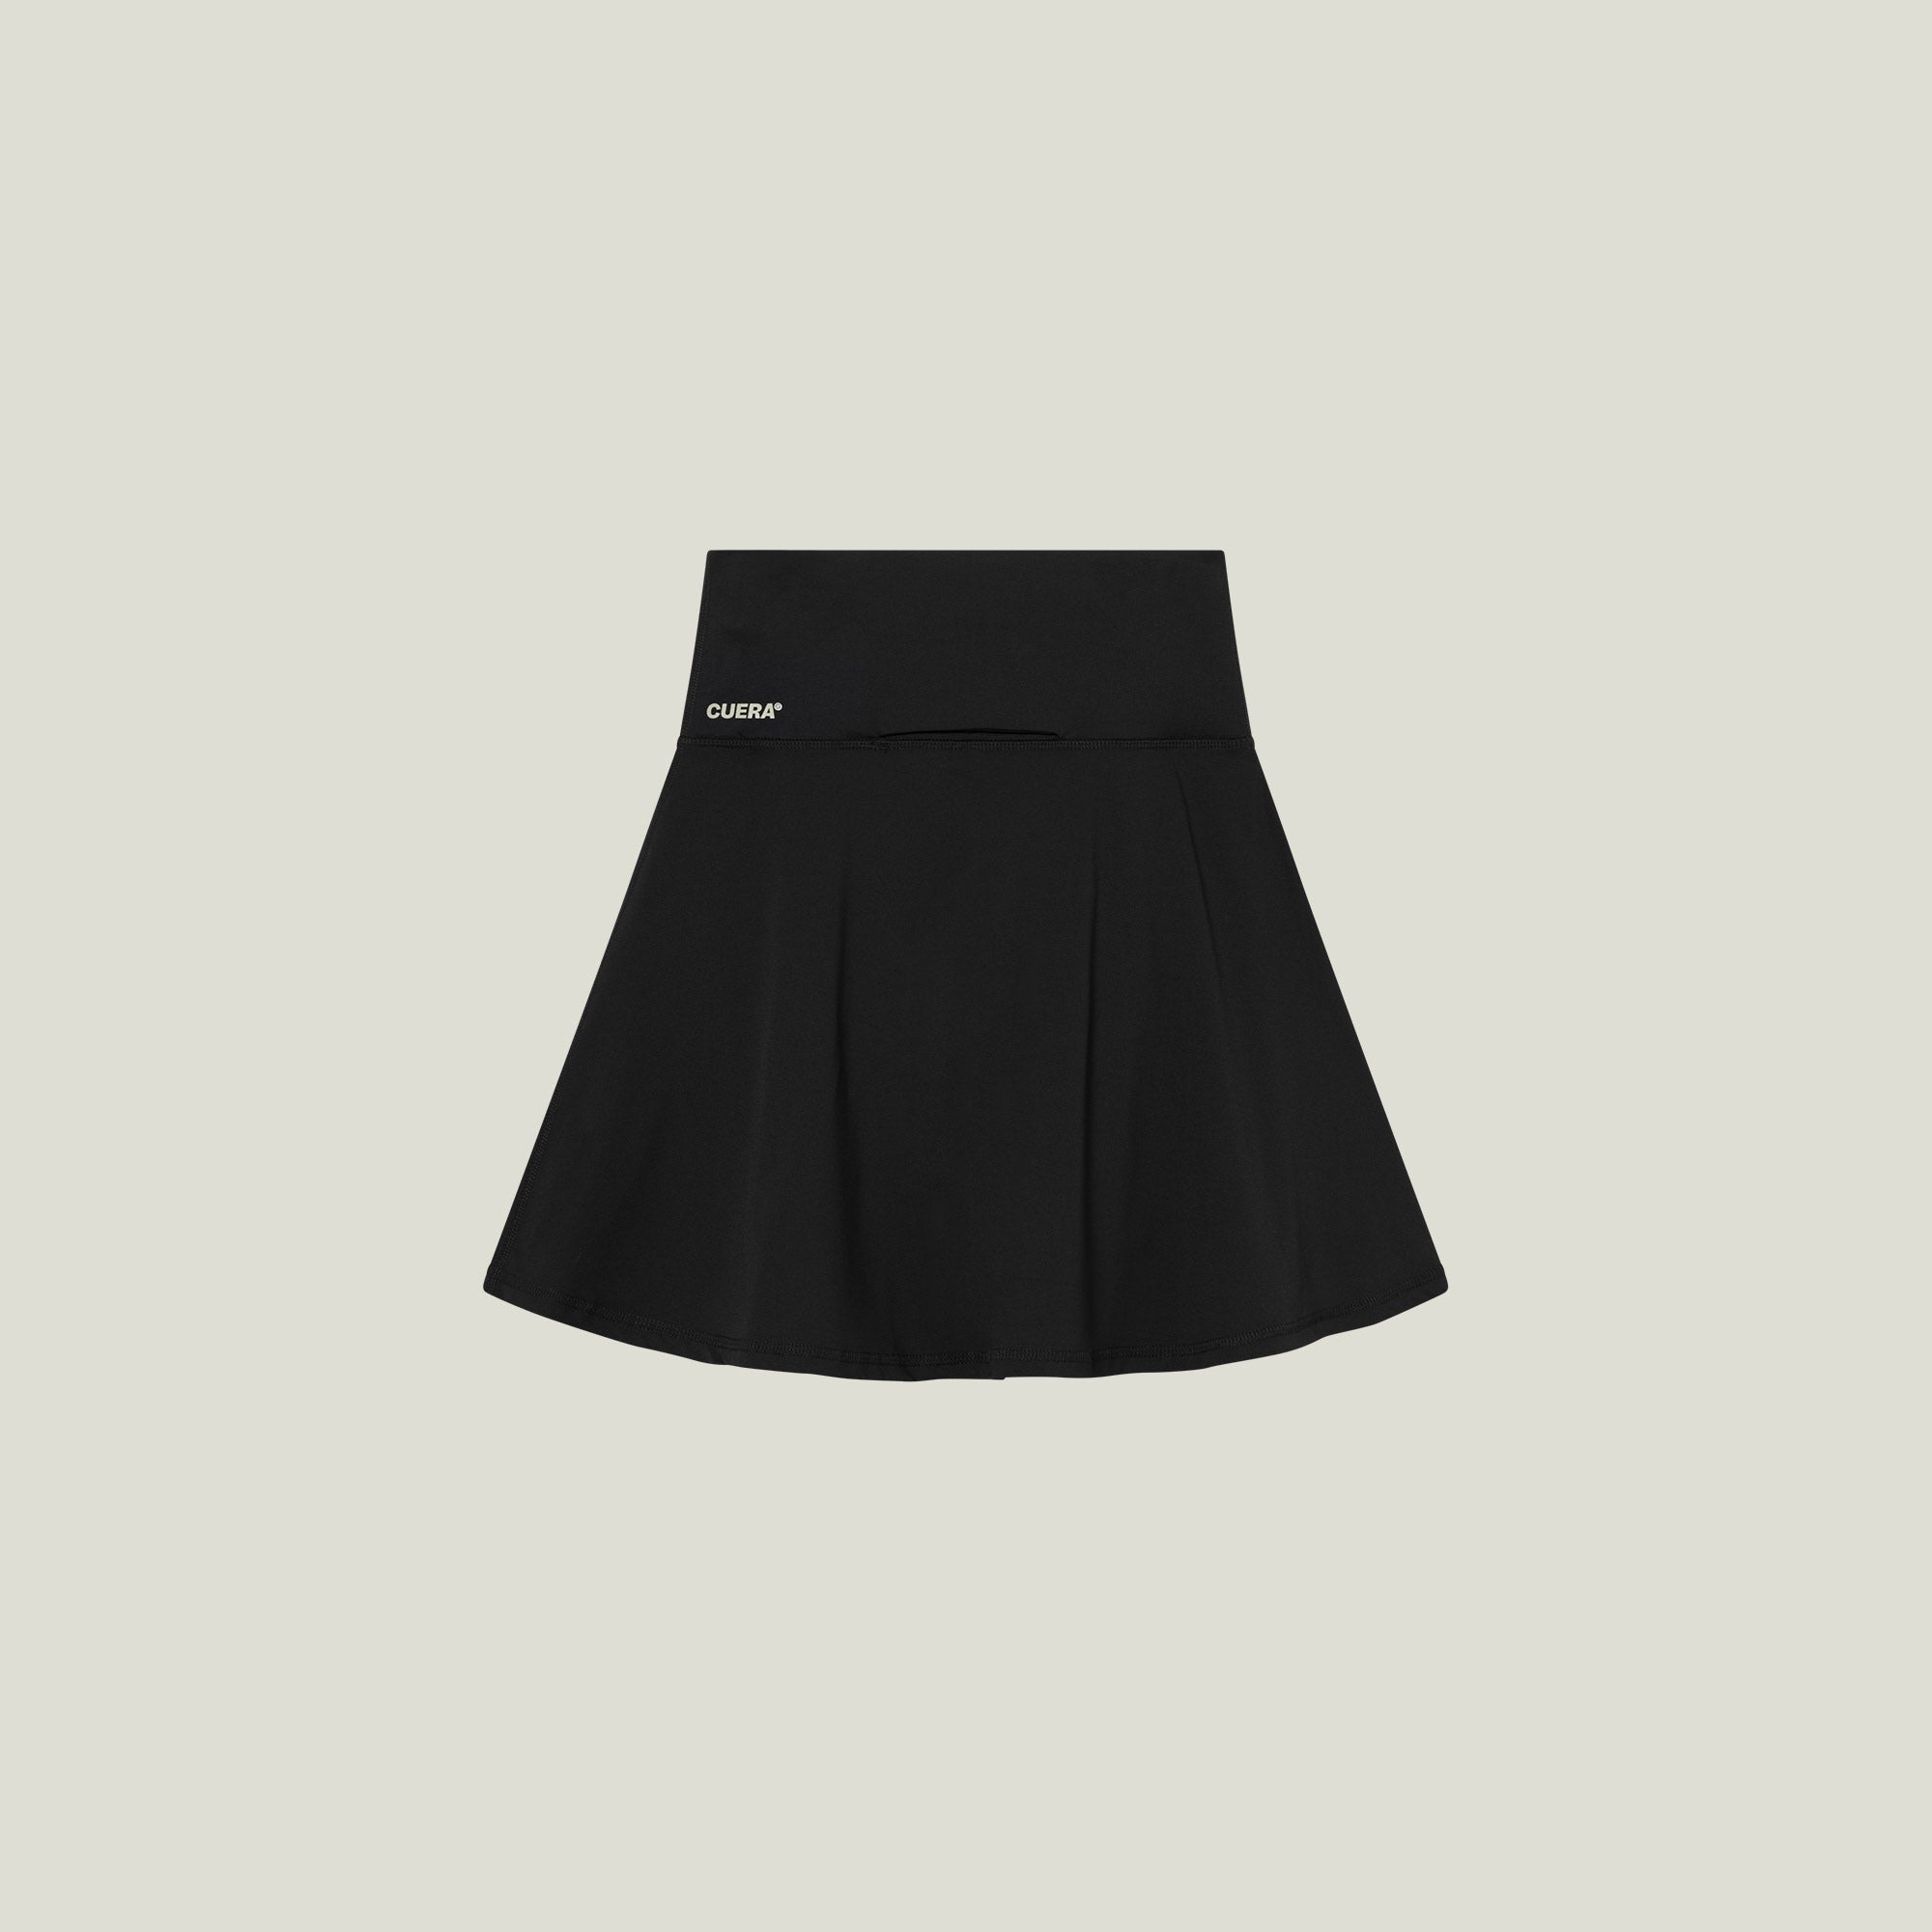 Oncourt Skirt 2-in-1 - Black